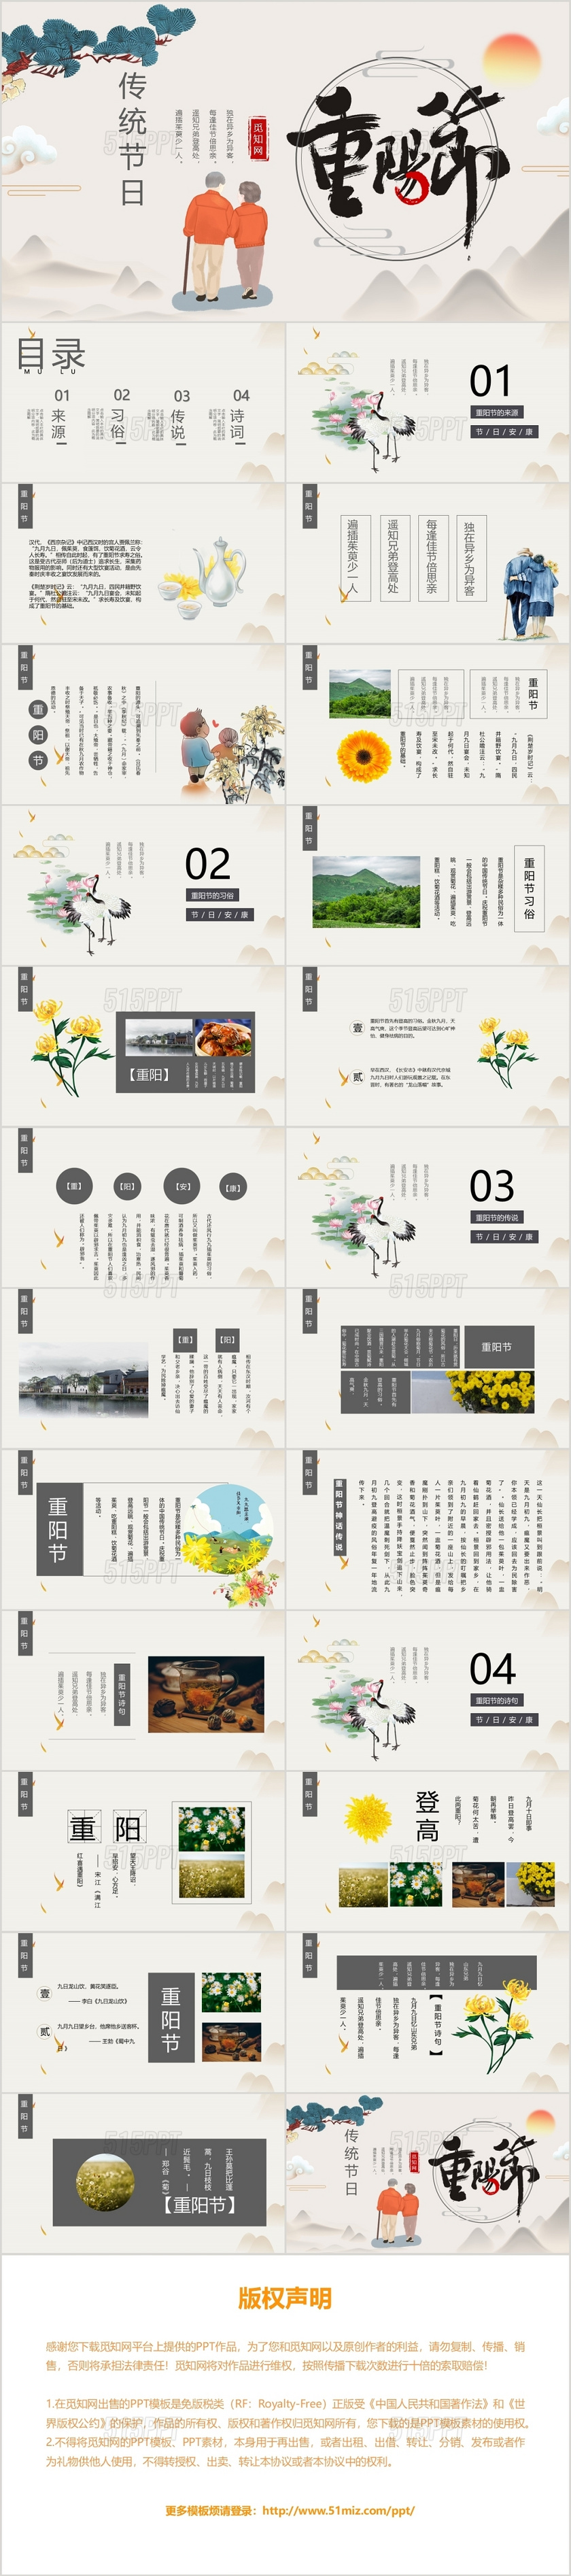 米色中式传统中国风风格传统节日农历99重阳节PPT模板